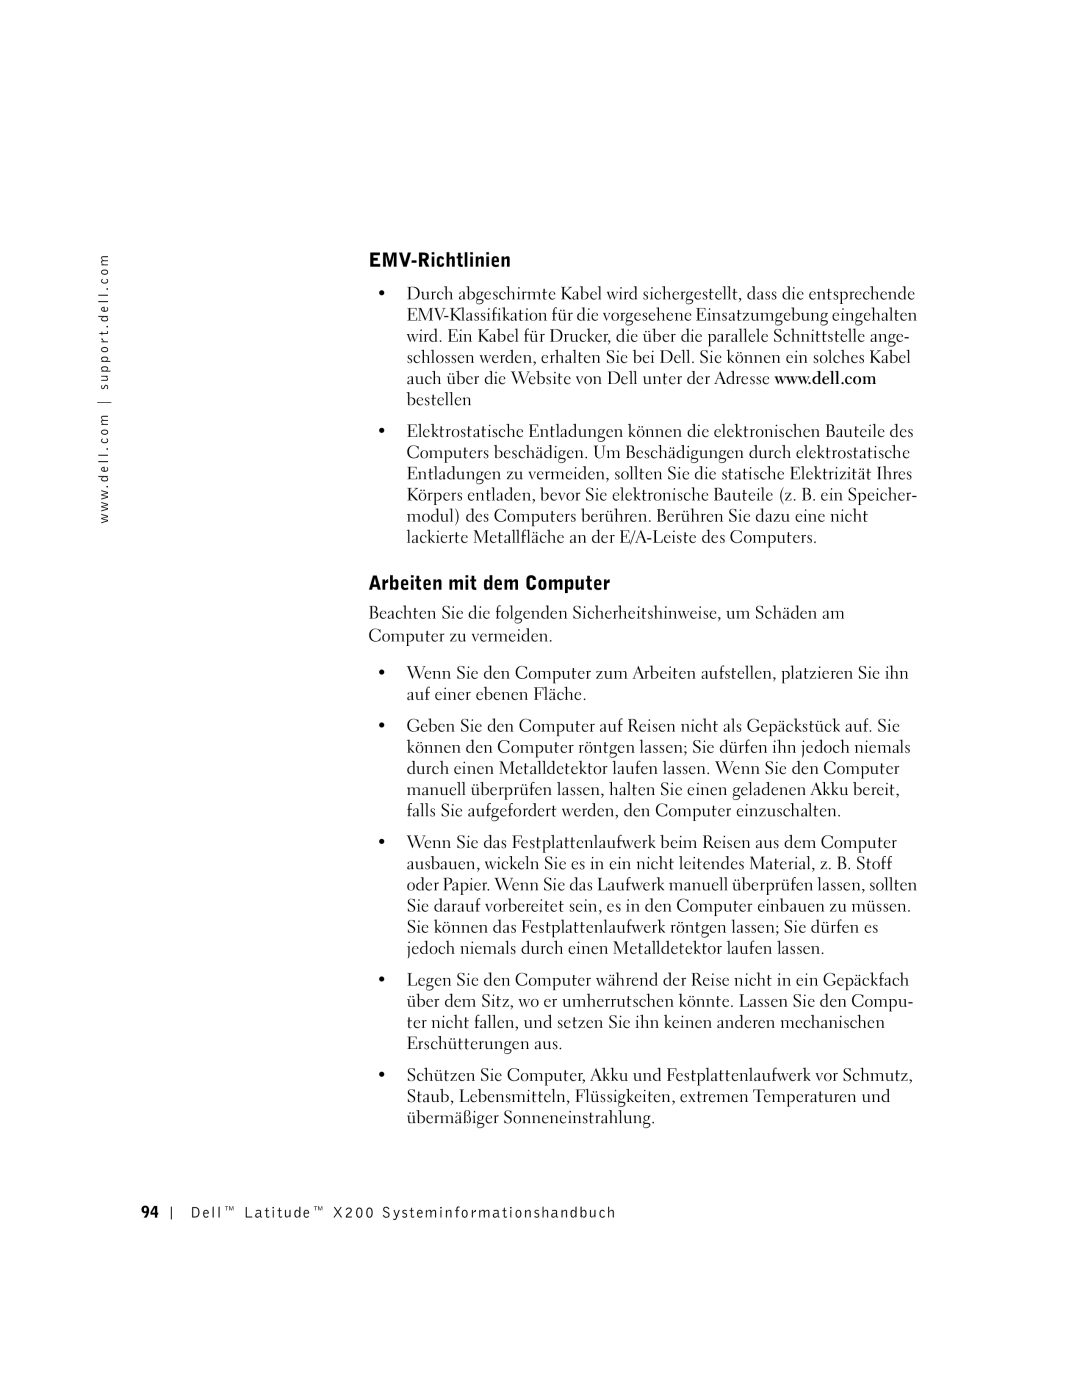 LeapFrog PP03S manual EMV-Richtlinien, Arbeiten mit dem Computer 